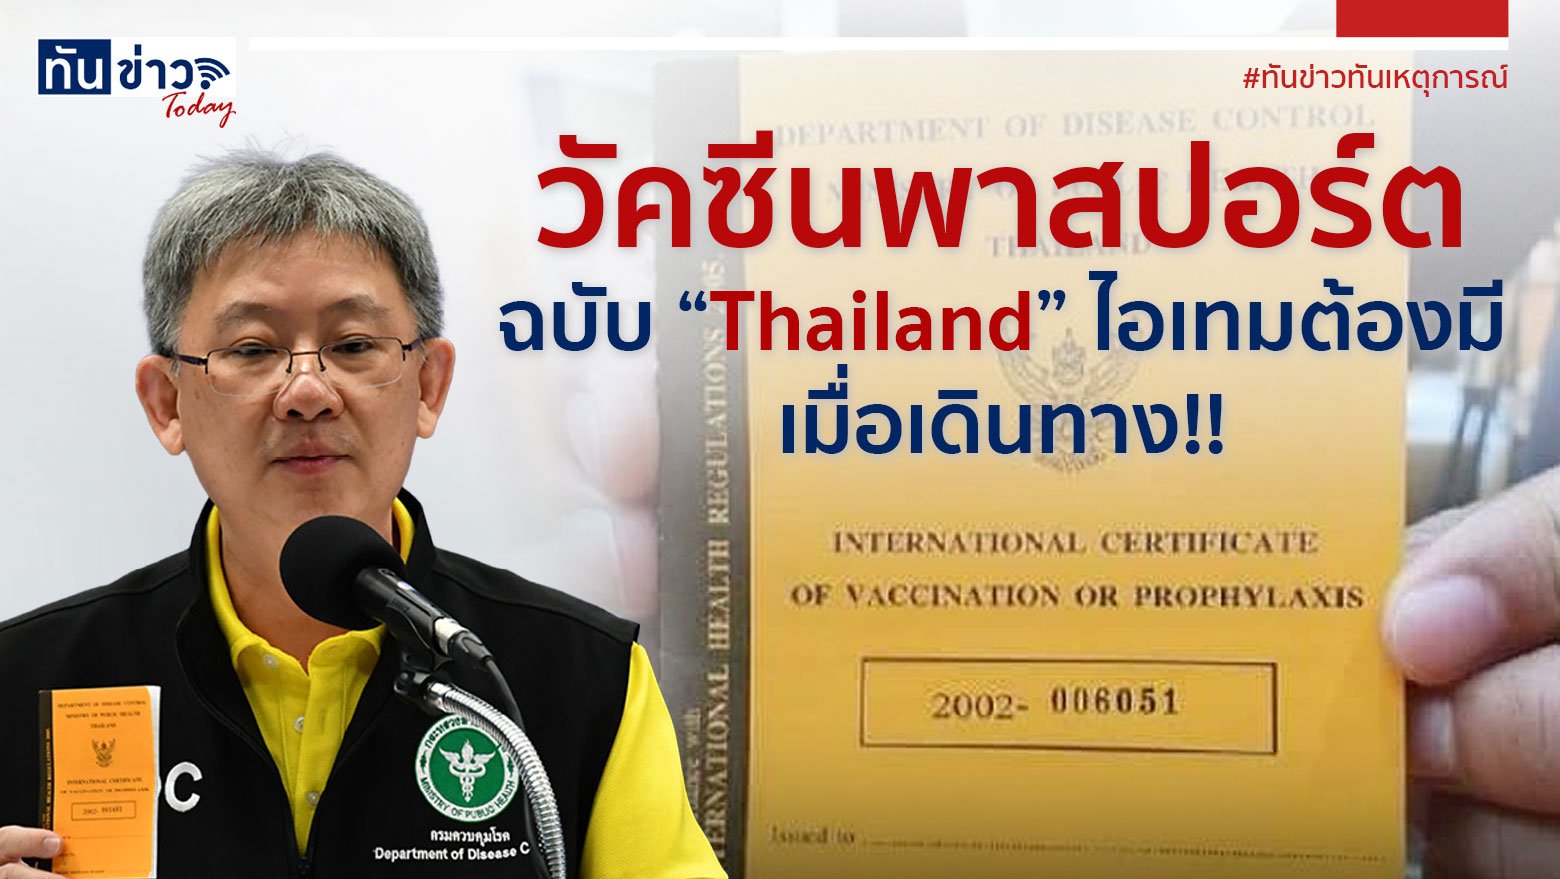 วัคซีนพาสปอร์ต ฉบับ Thailand  ไอเทมต้องมี  เมื่อเดินทาง‼️